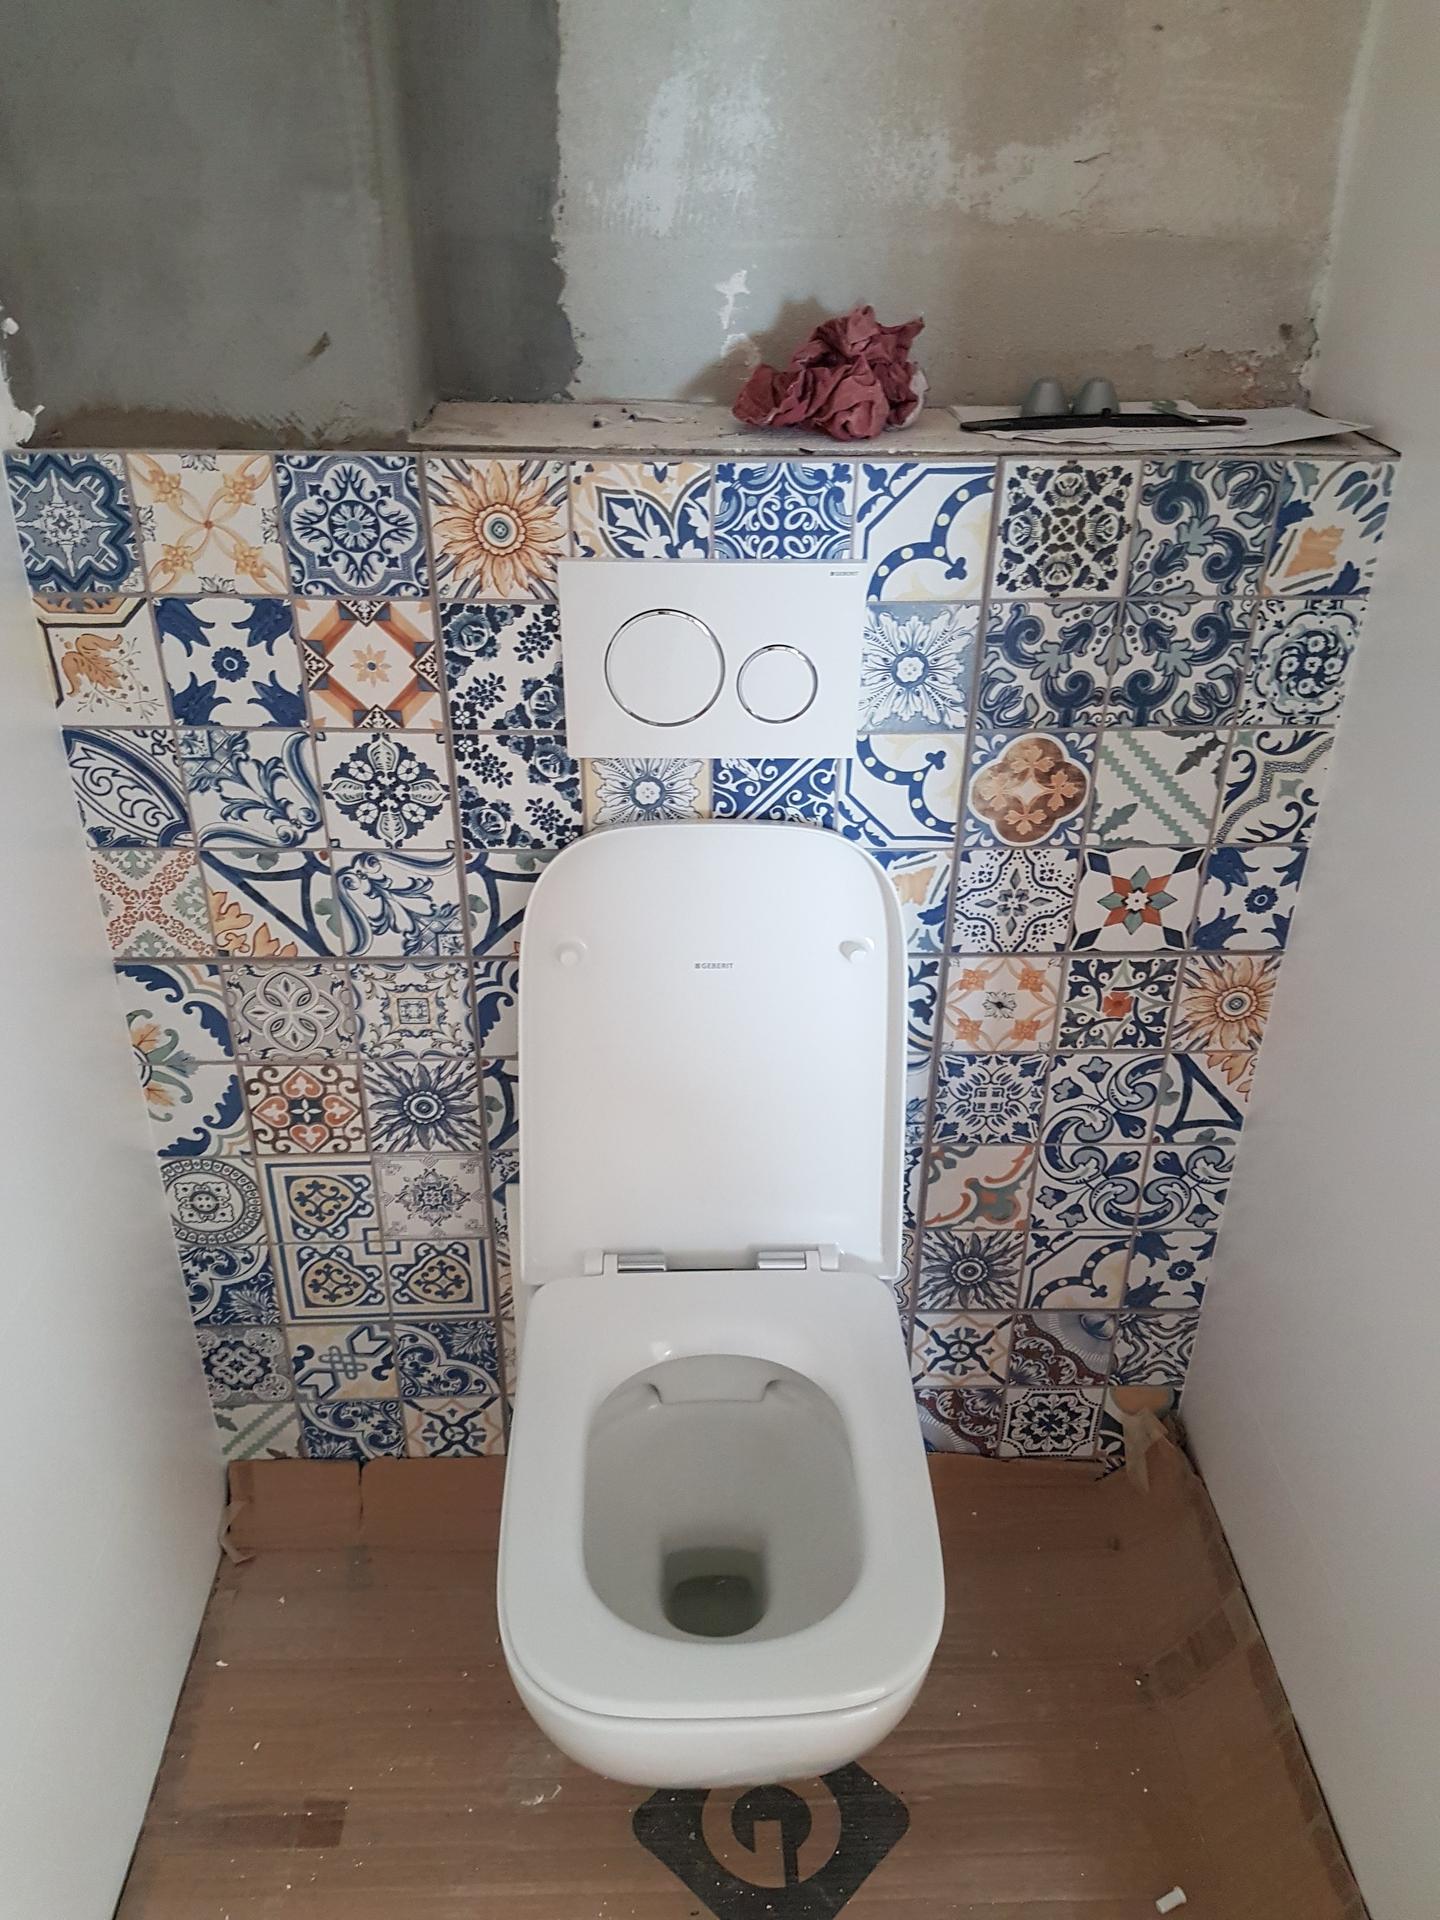 2022 Zařizujeme, vybavujeme a plníme dům rodinou :-) - Záchod (Geberit Selnova Square) v přízemí čeká již na své návštěvníky